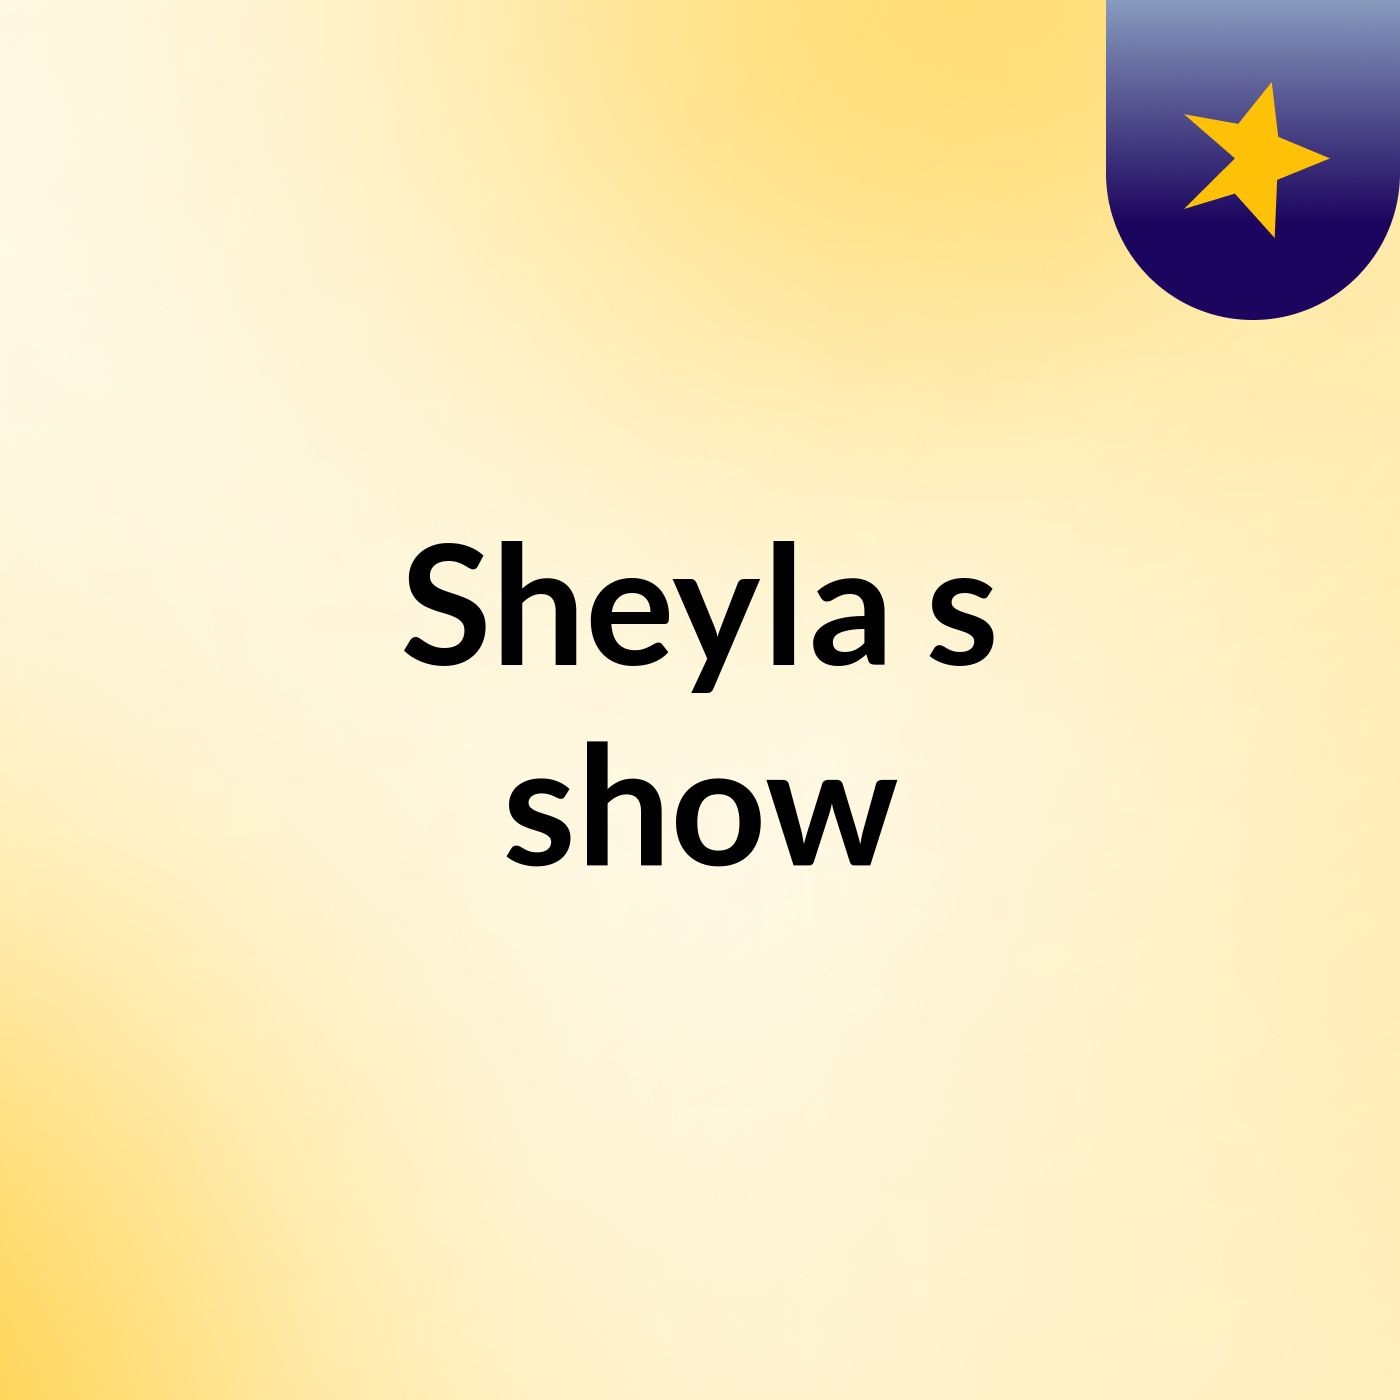 Sheyla's show